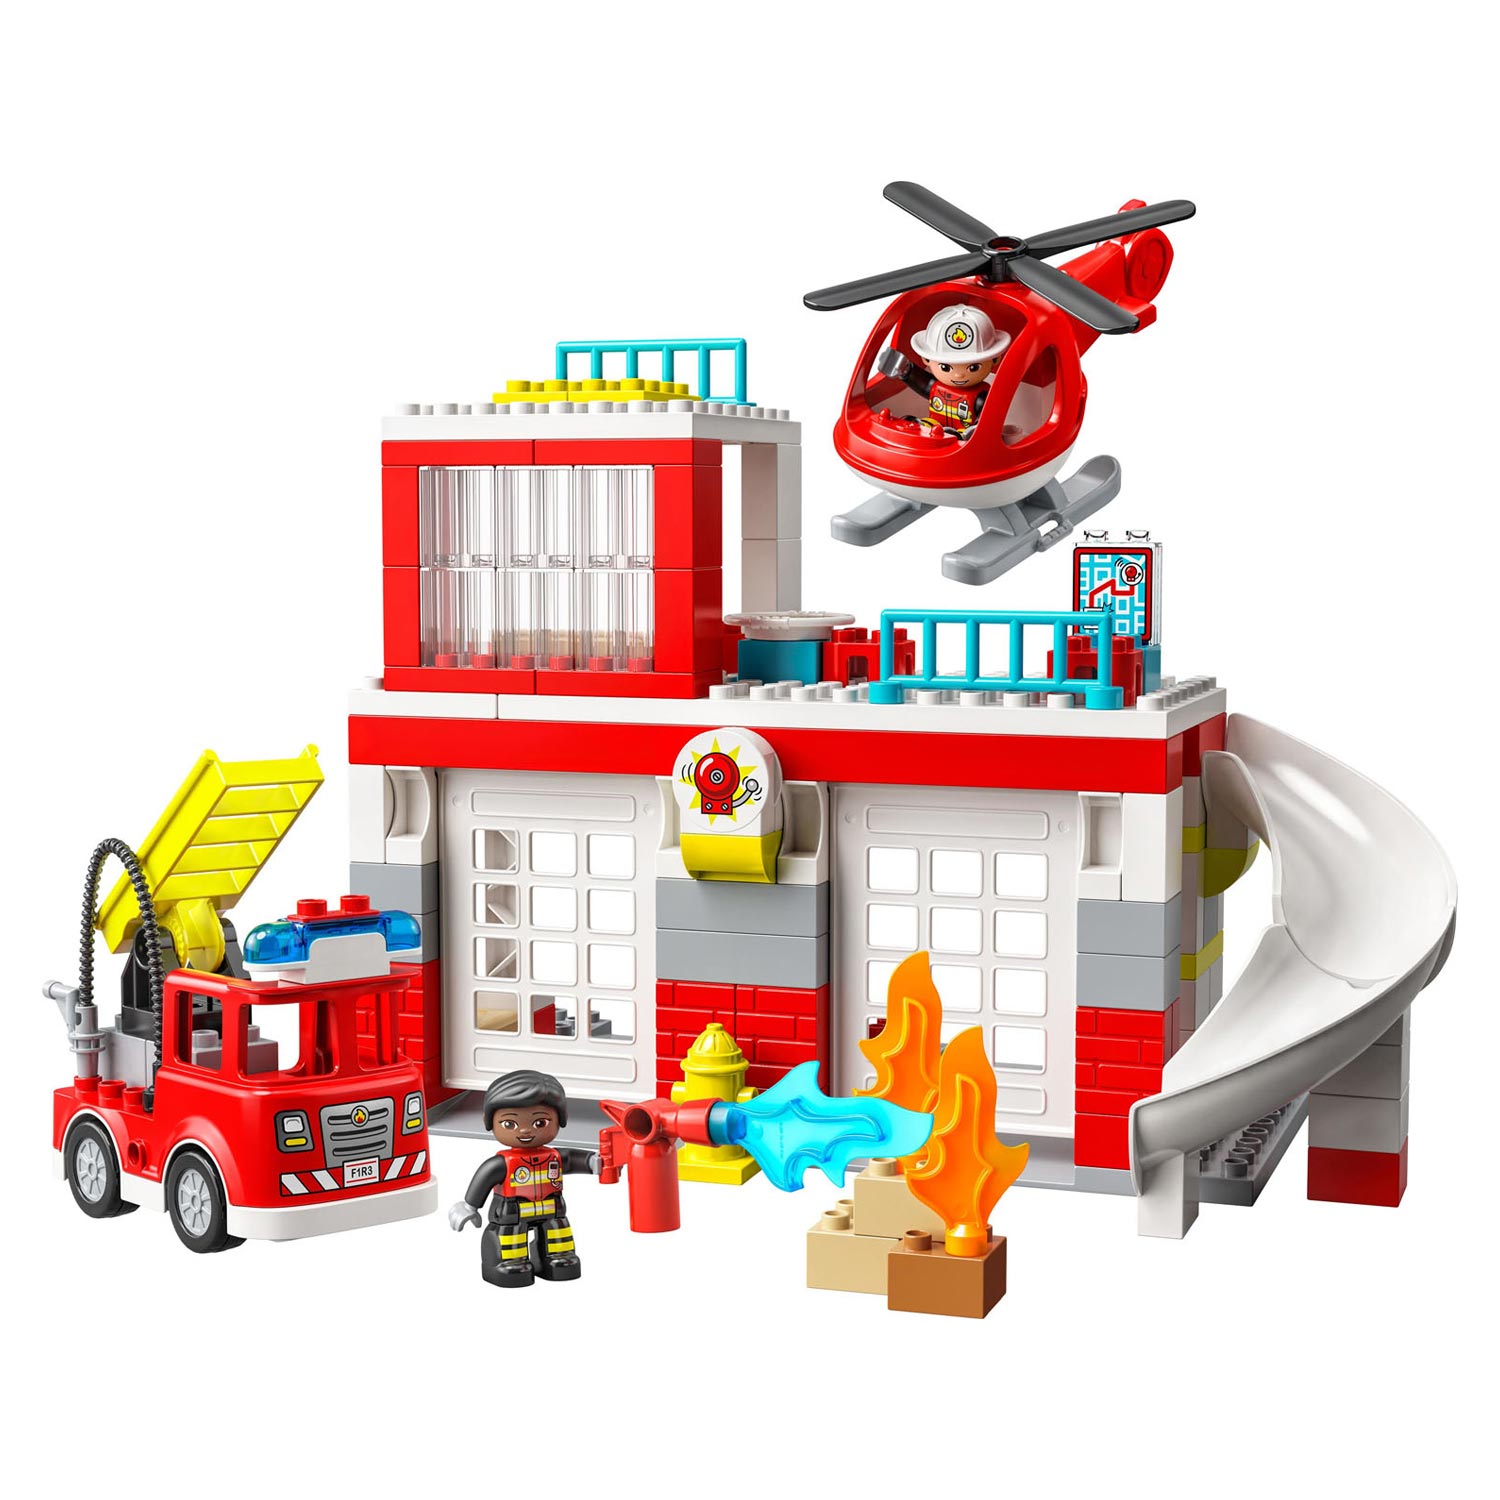 LEGO Duplo 10970 Caserne de pompiers et hélicoptère